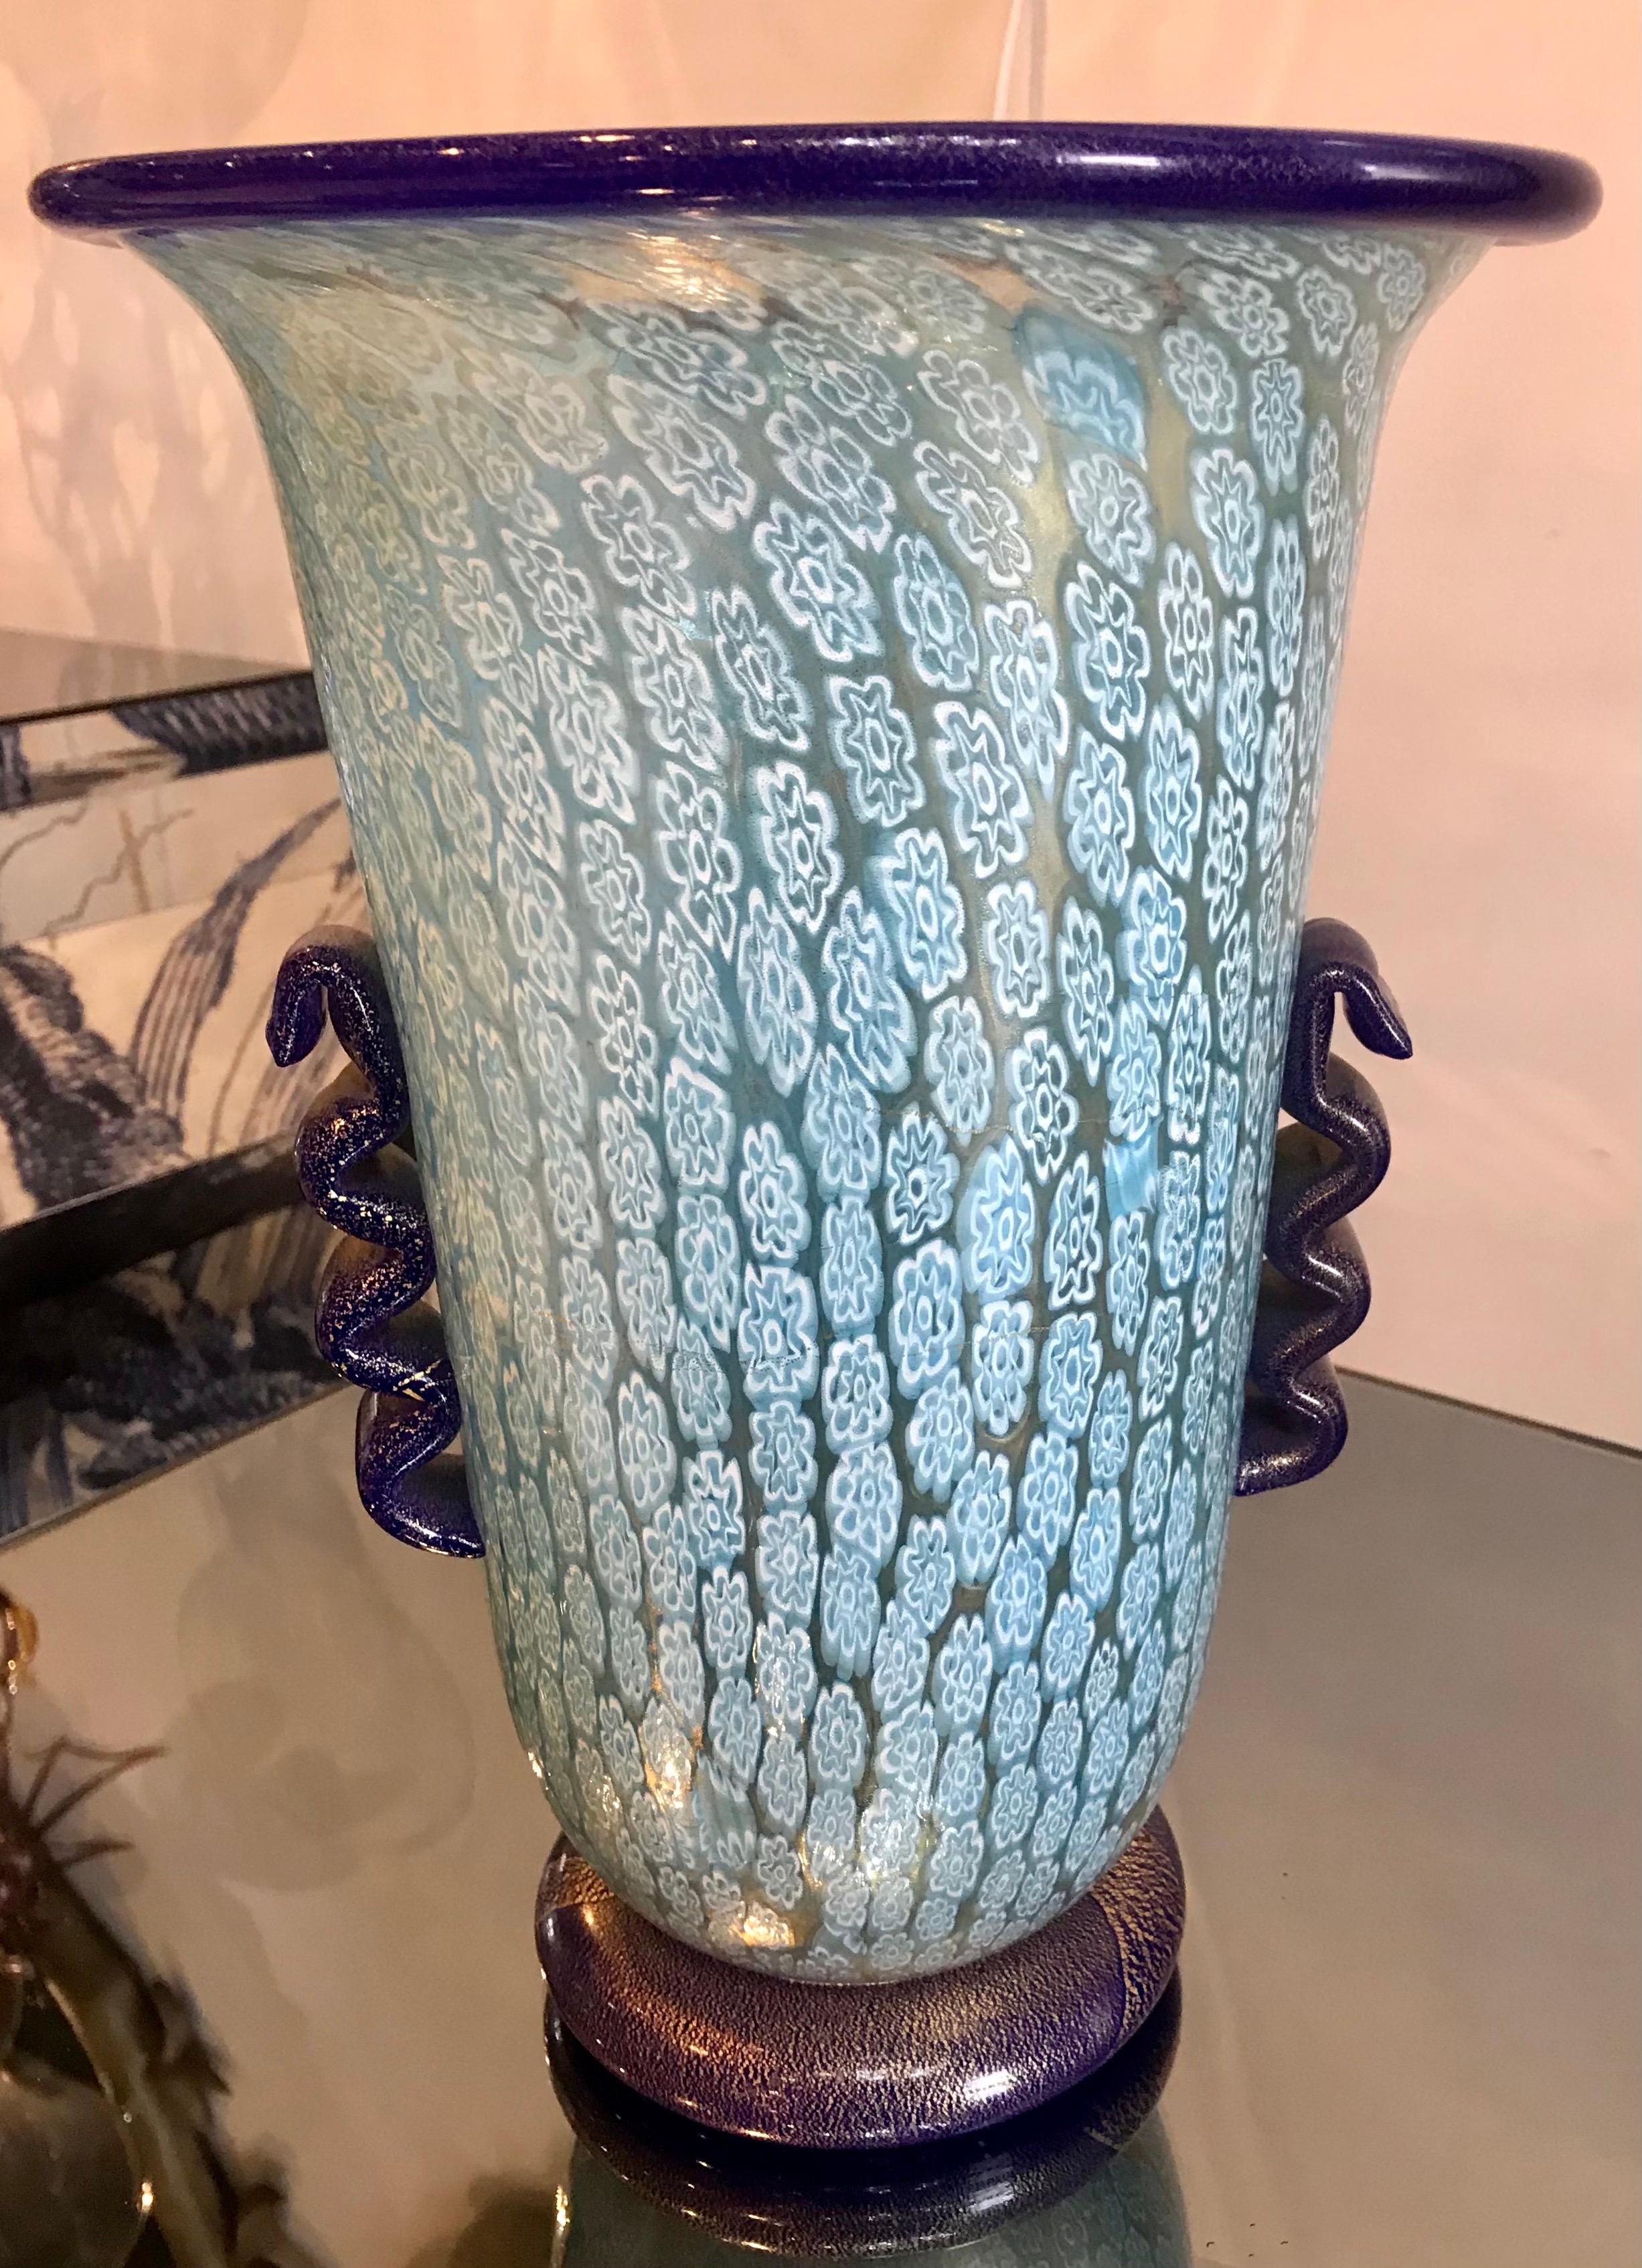 Grand vase Millefiori bleu clair. La base et les poignées bleu cobalt ont une inclusion d'or. En très bon état.